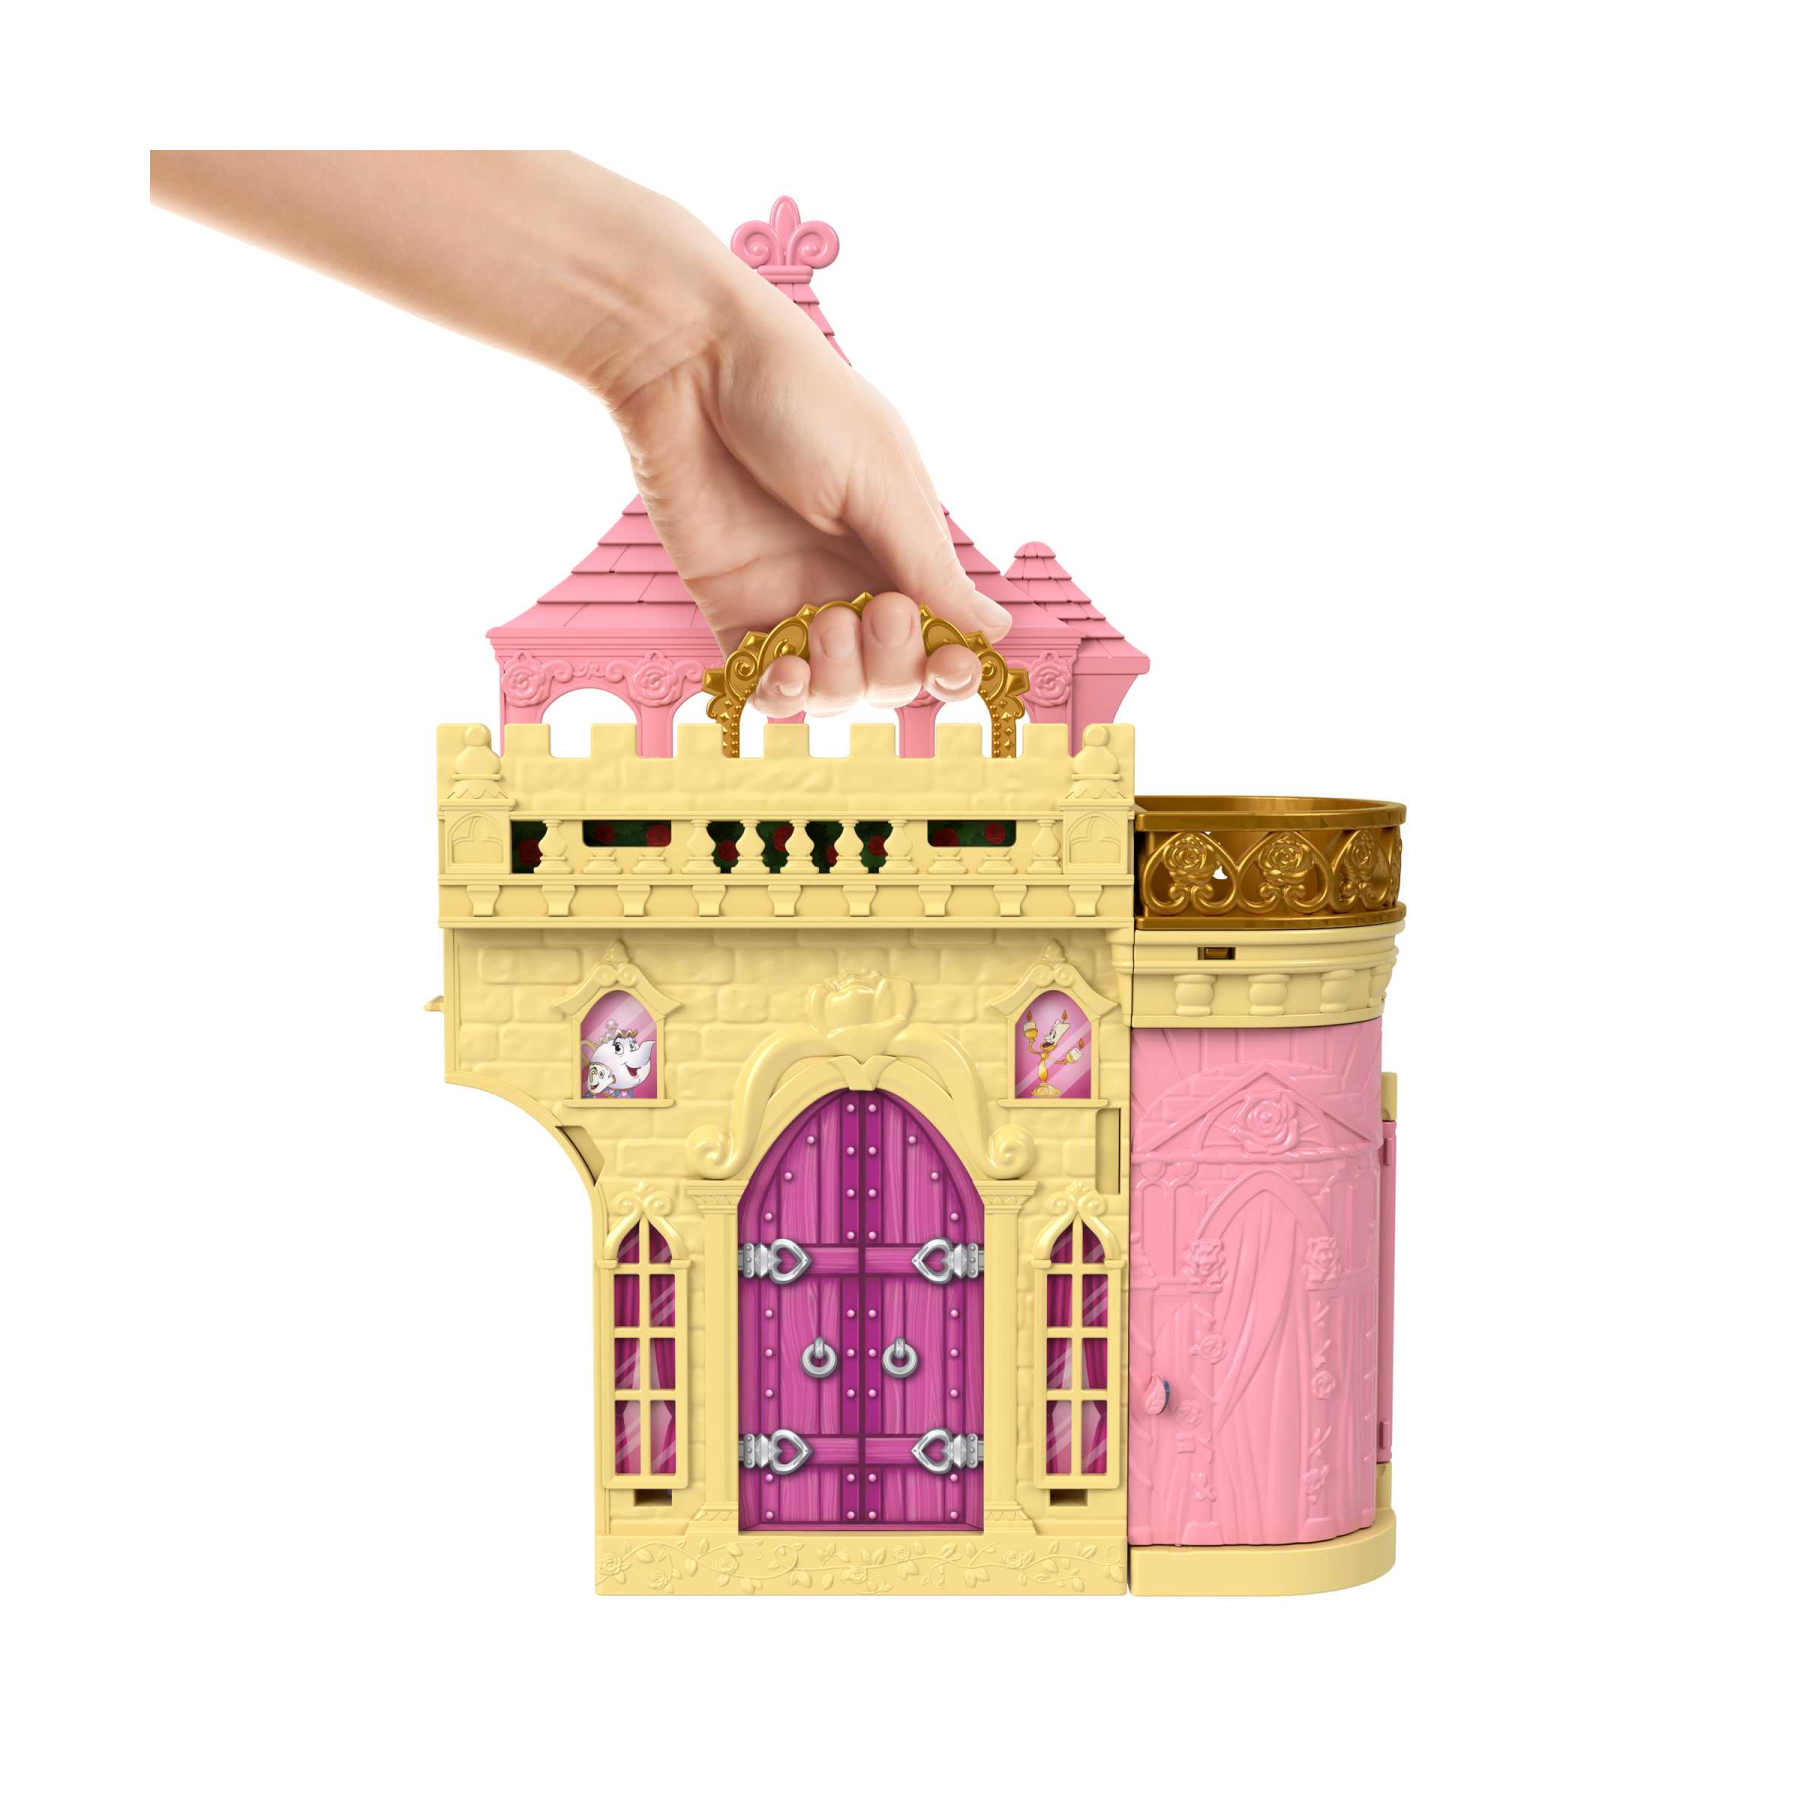 Disney princess - set componibili il castello di belle, playset trasportabile con bambola belle, 4 amici e tanti accessori, giocattolo per bambini, 3+ anni, hlw94 - DISNEY PRINCESS